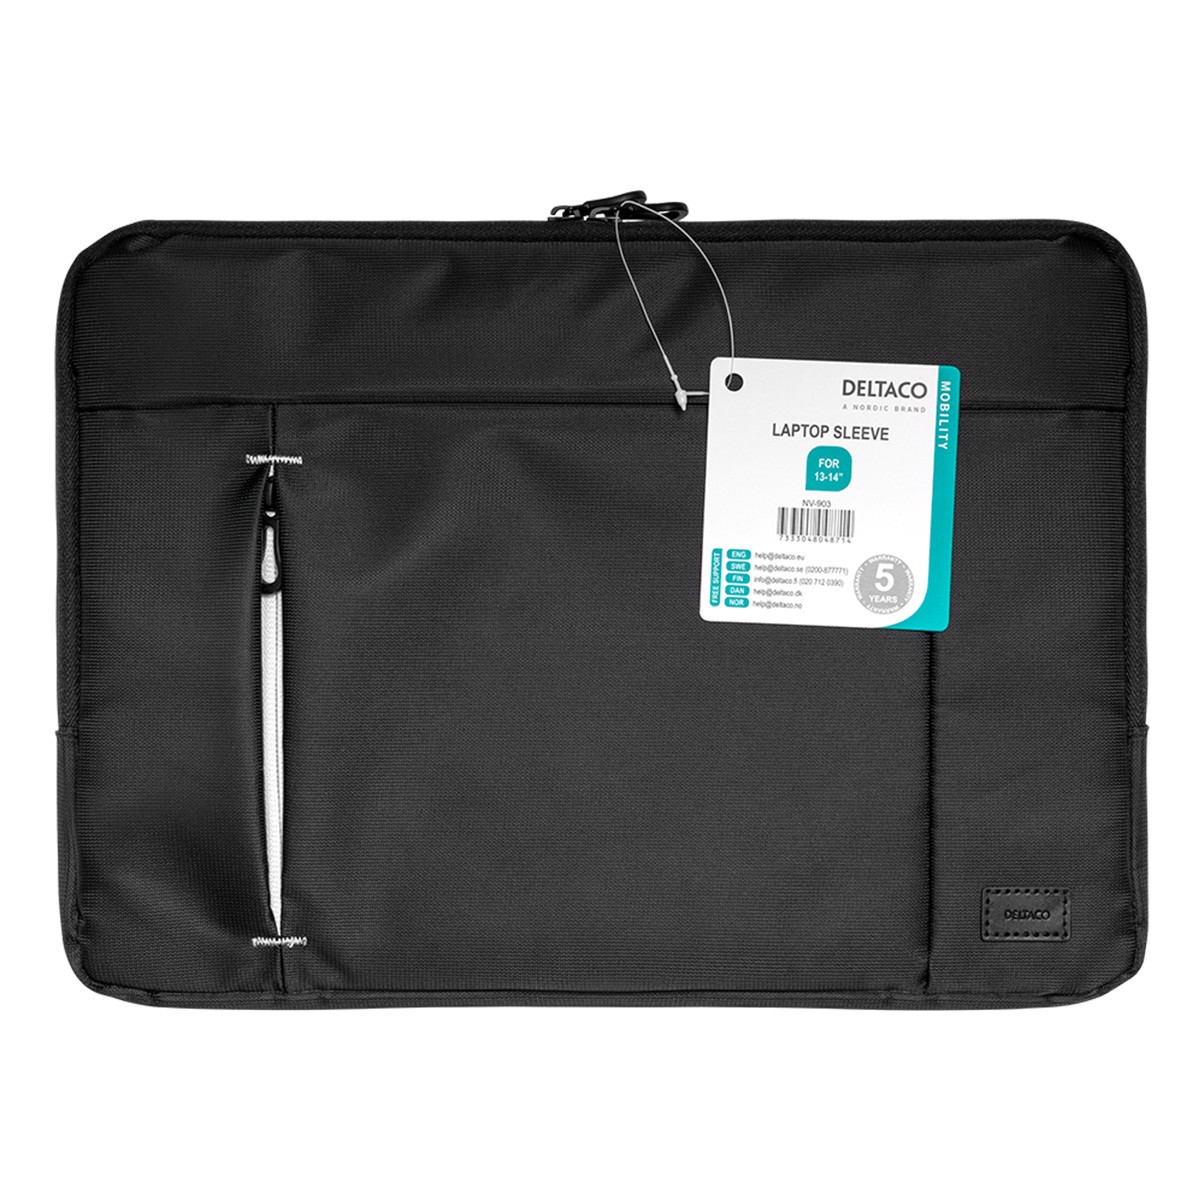 Deltaco Laptopfodral för laptops upp till 13-14 tum, svart